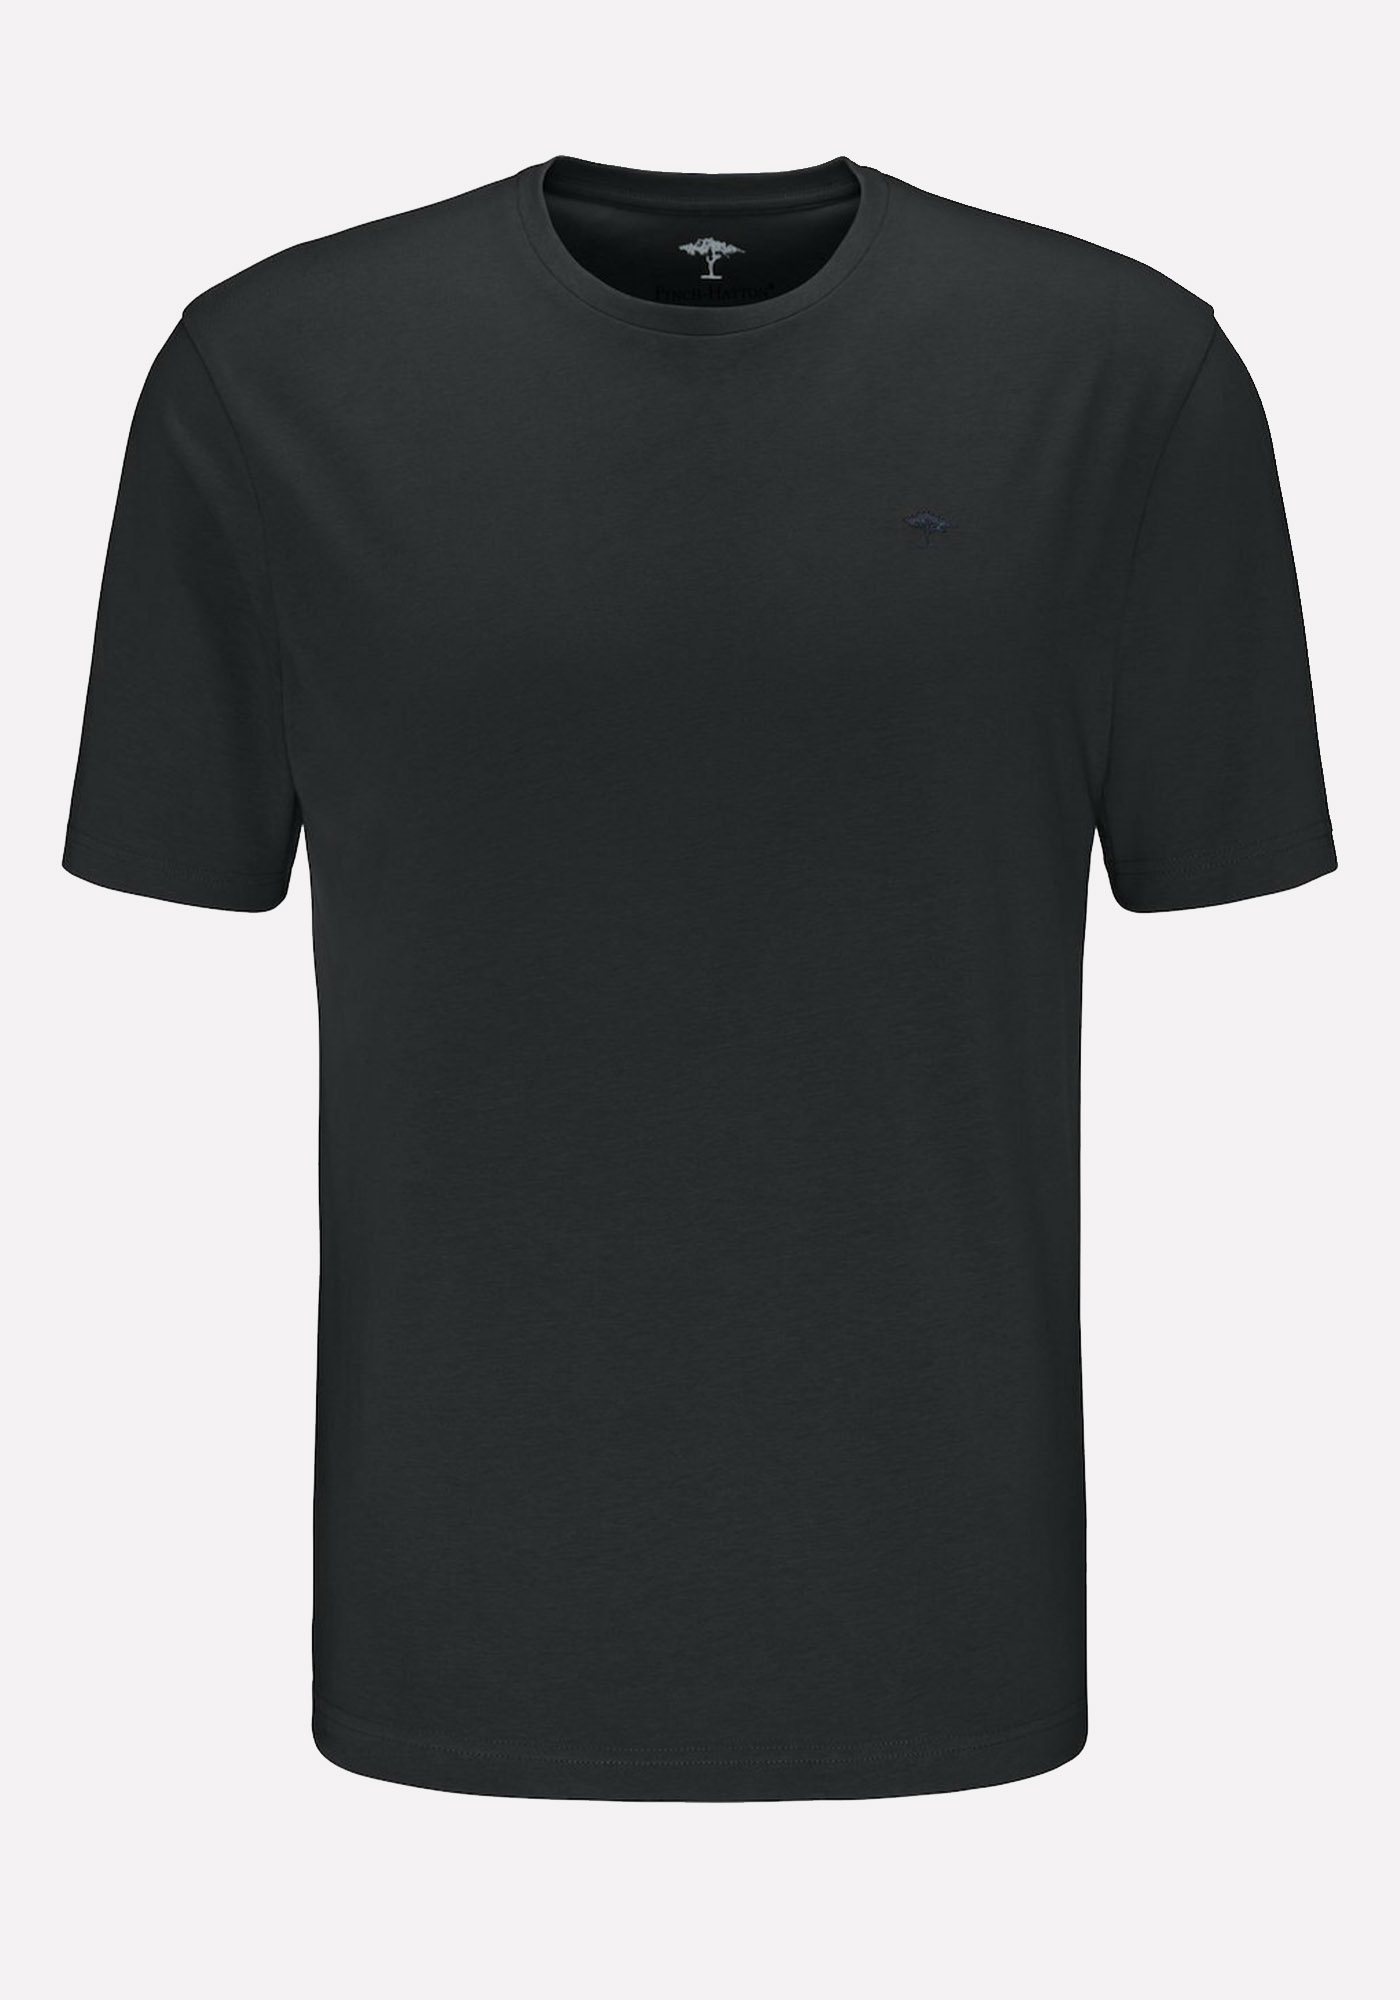 Fynch Hatton T Shirt της σειράς SNOS - SNOS 1500 999 Black